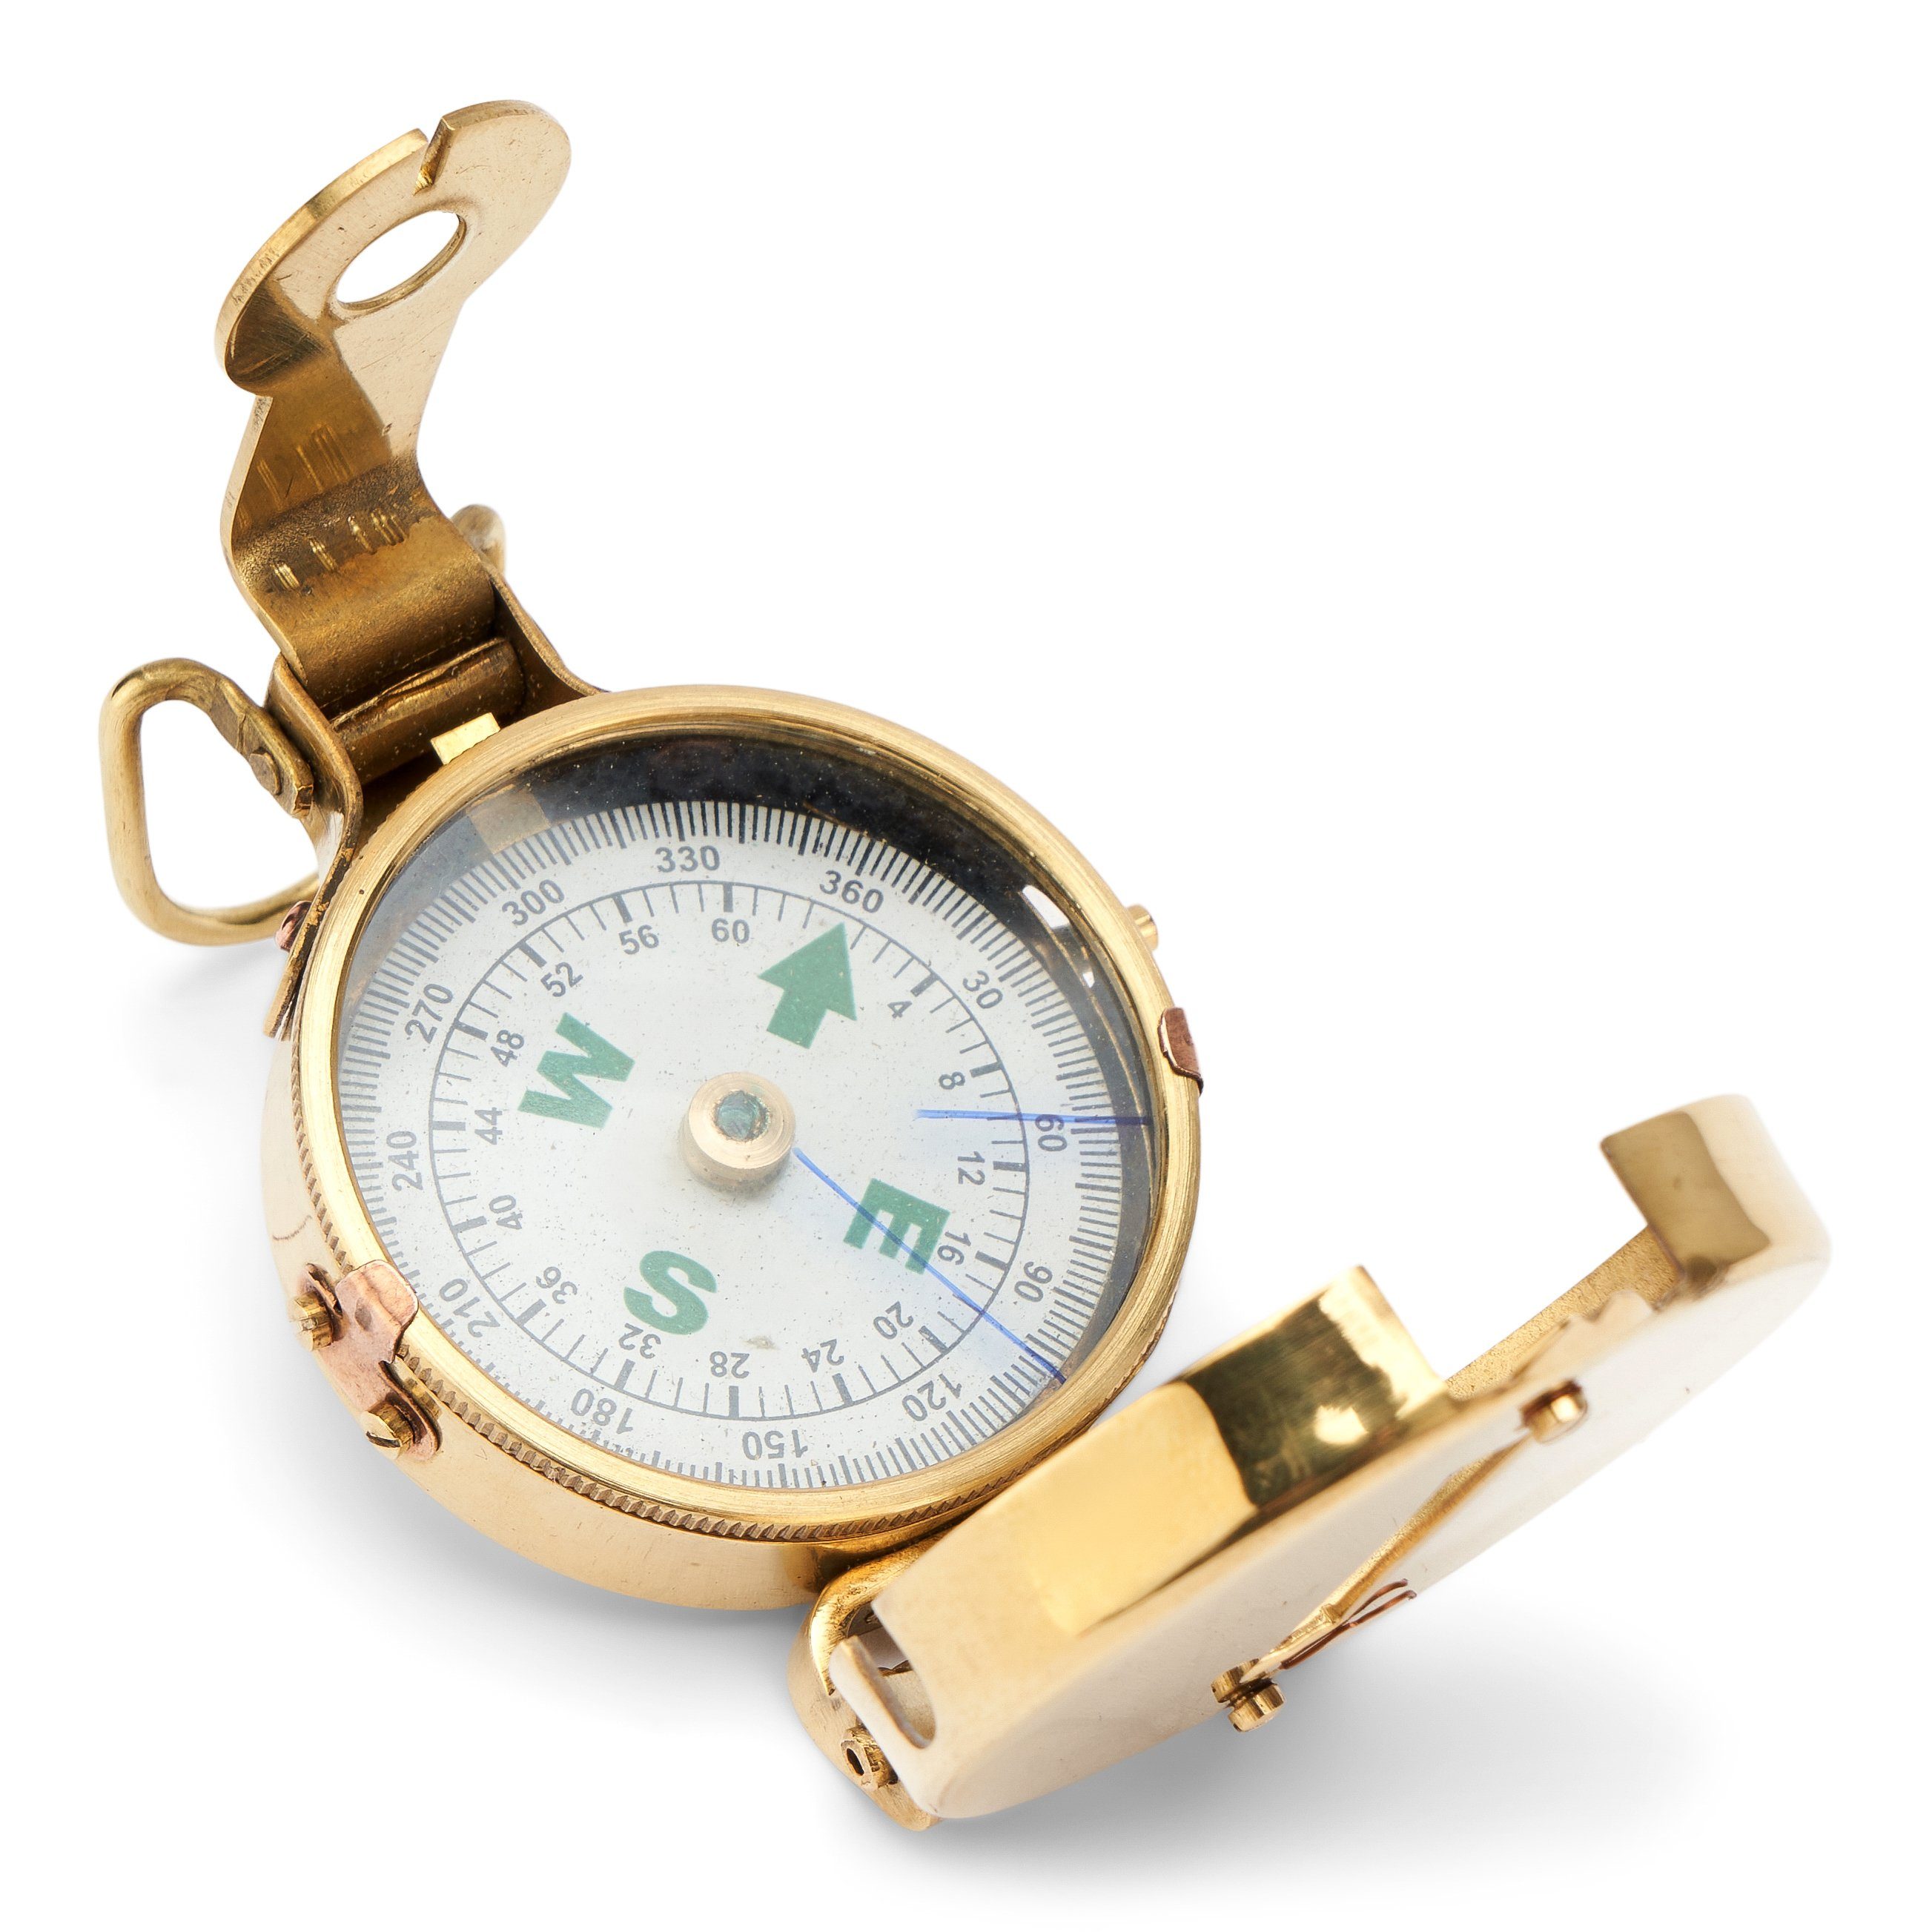 NKlaus 5cm Taschenkompass maritimes Navigationsgerät aus Messing (Messing) Orientier Peilkompass Richtungsanzeiger